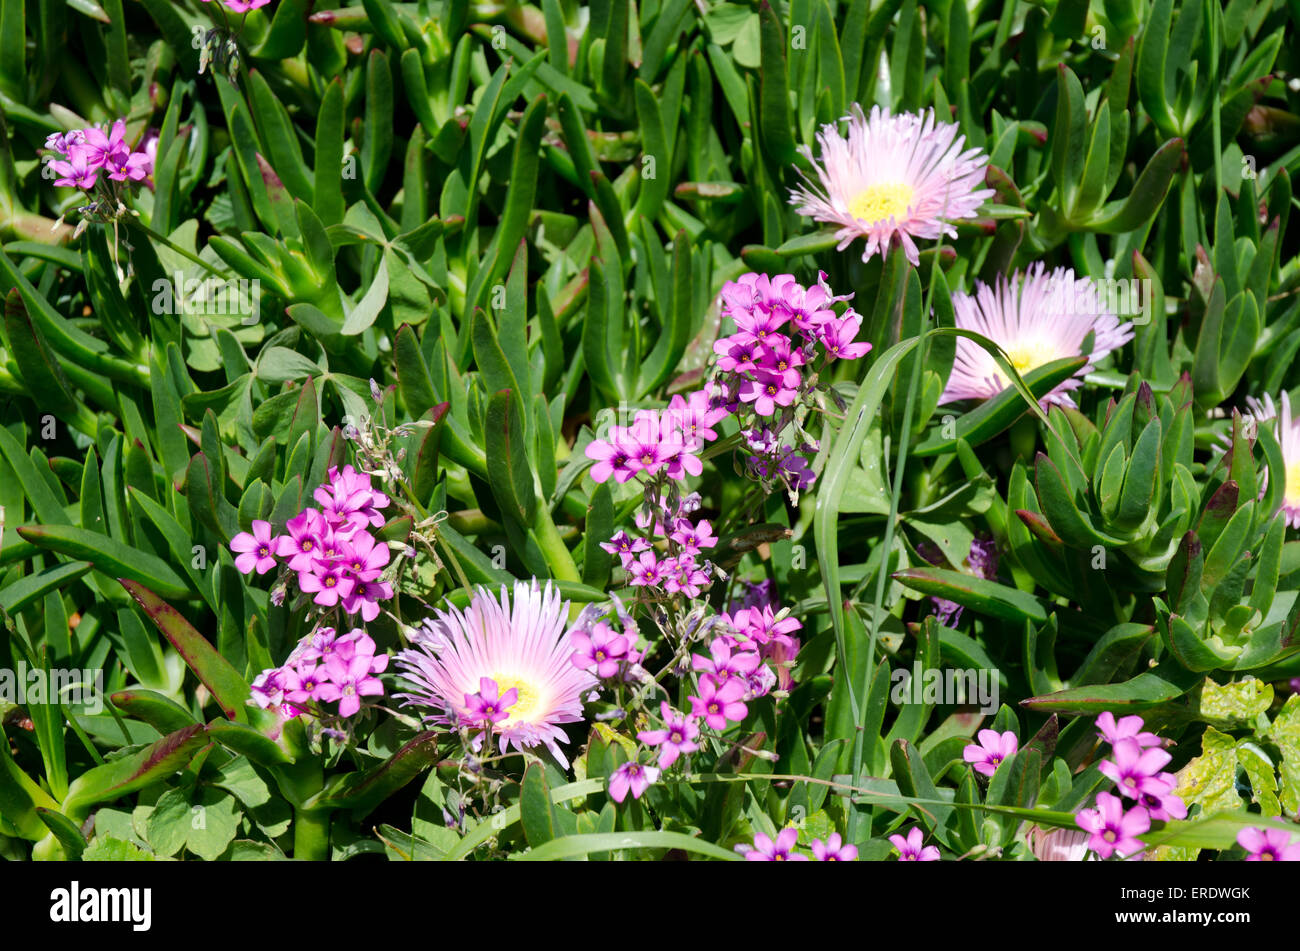 Pink daisy como flores con centros de color amarillo y hojas suculentas encontradas frecuentemente en climas soleados Foto de stock